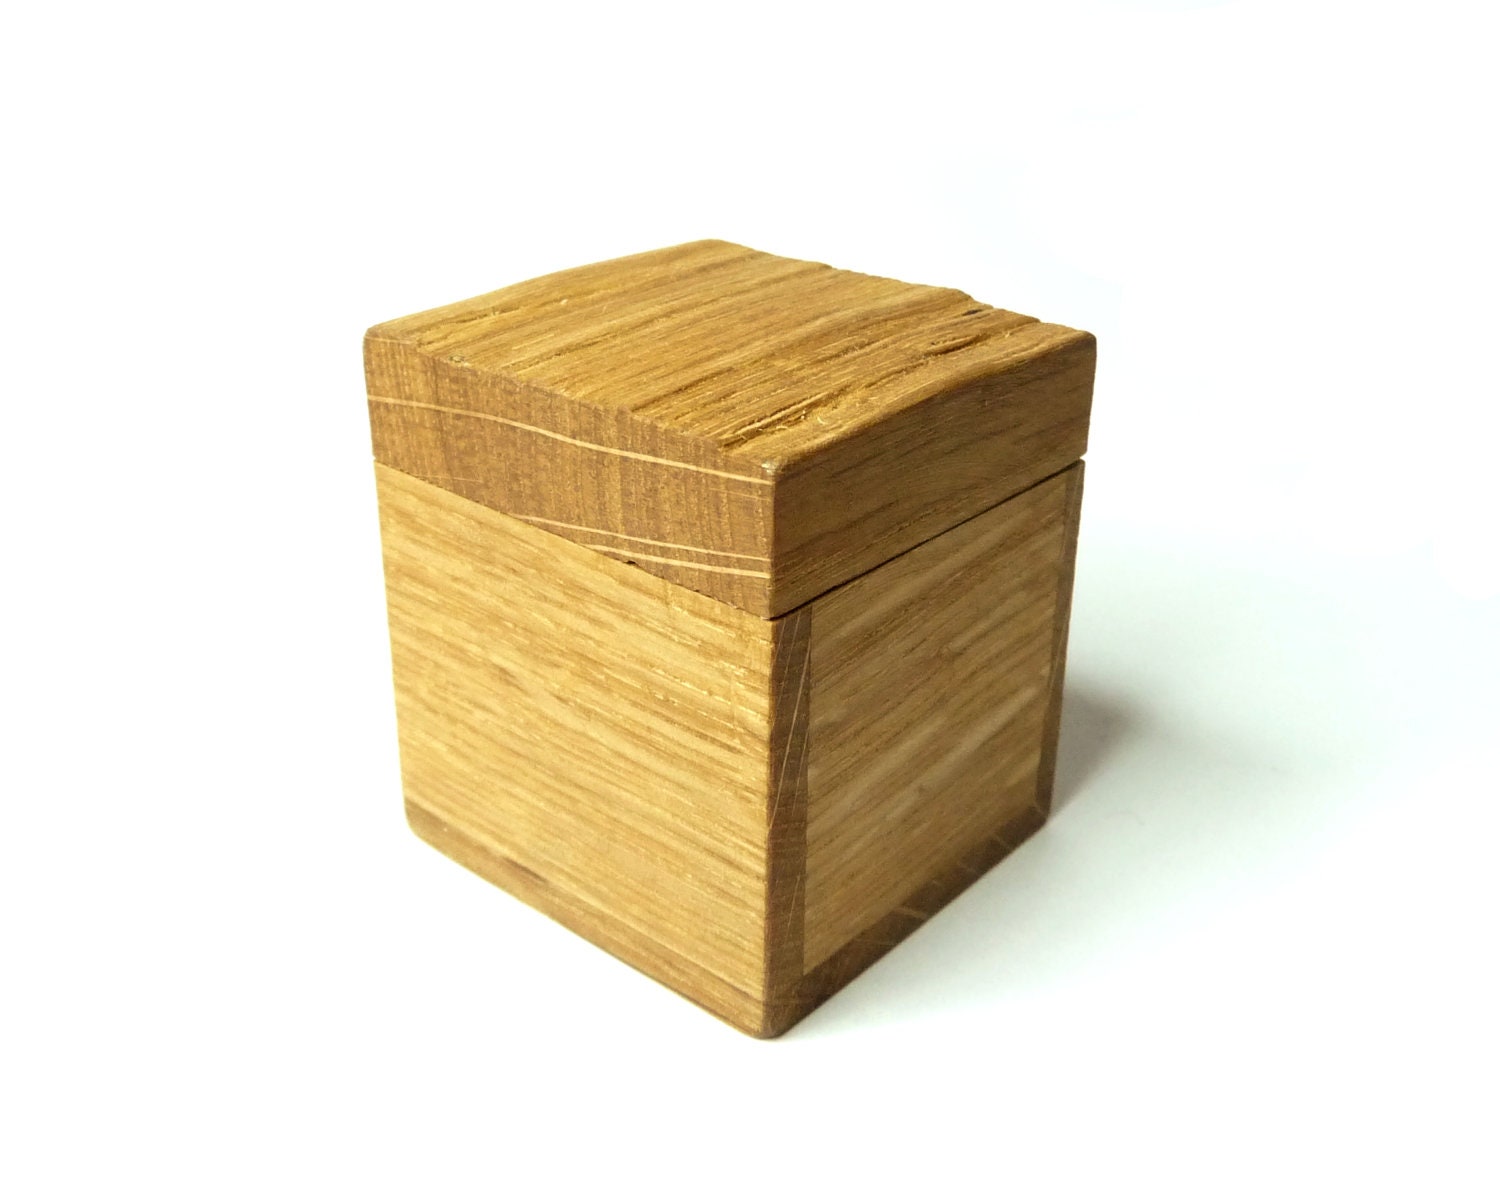 Wooden Box Ring Box Oak wood Jewelry Box Gift by KipkalinkaJewels